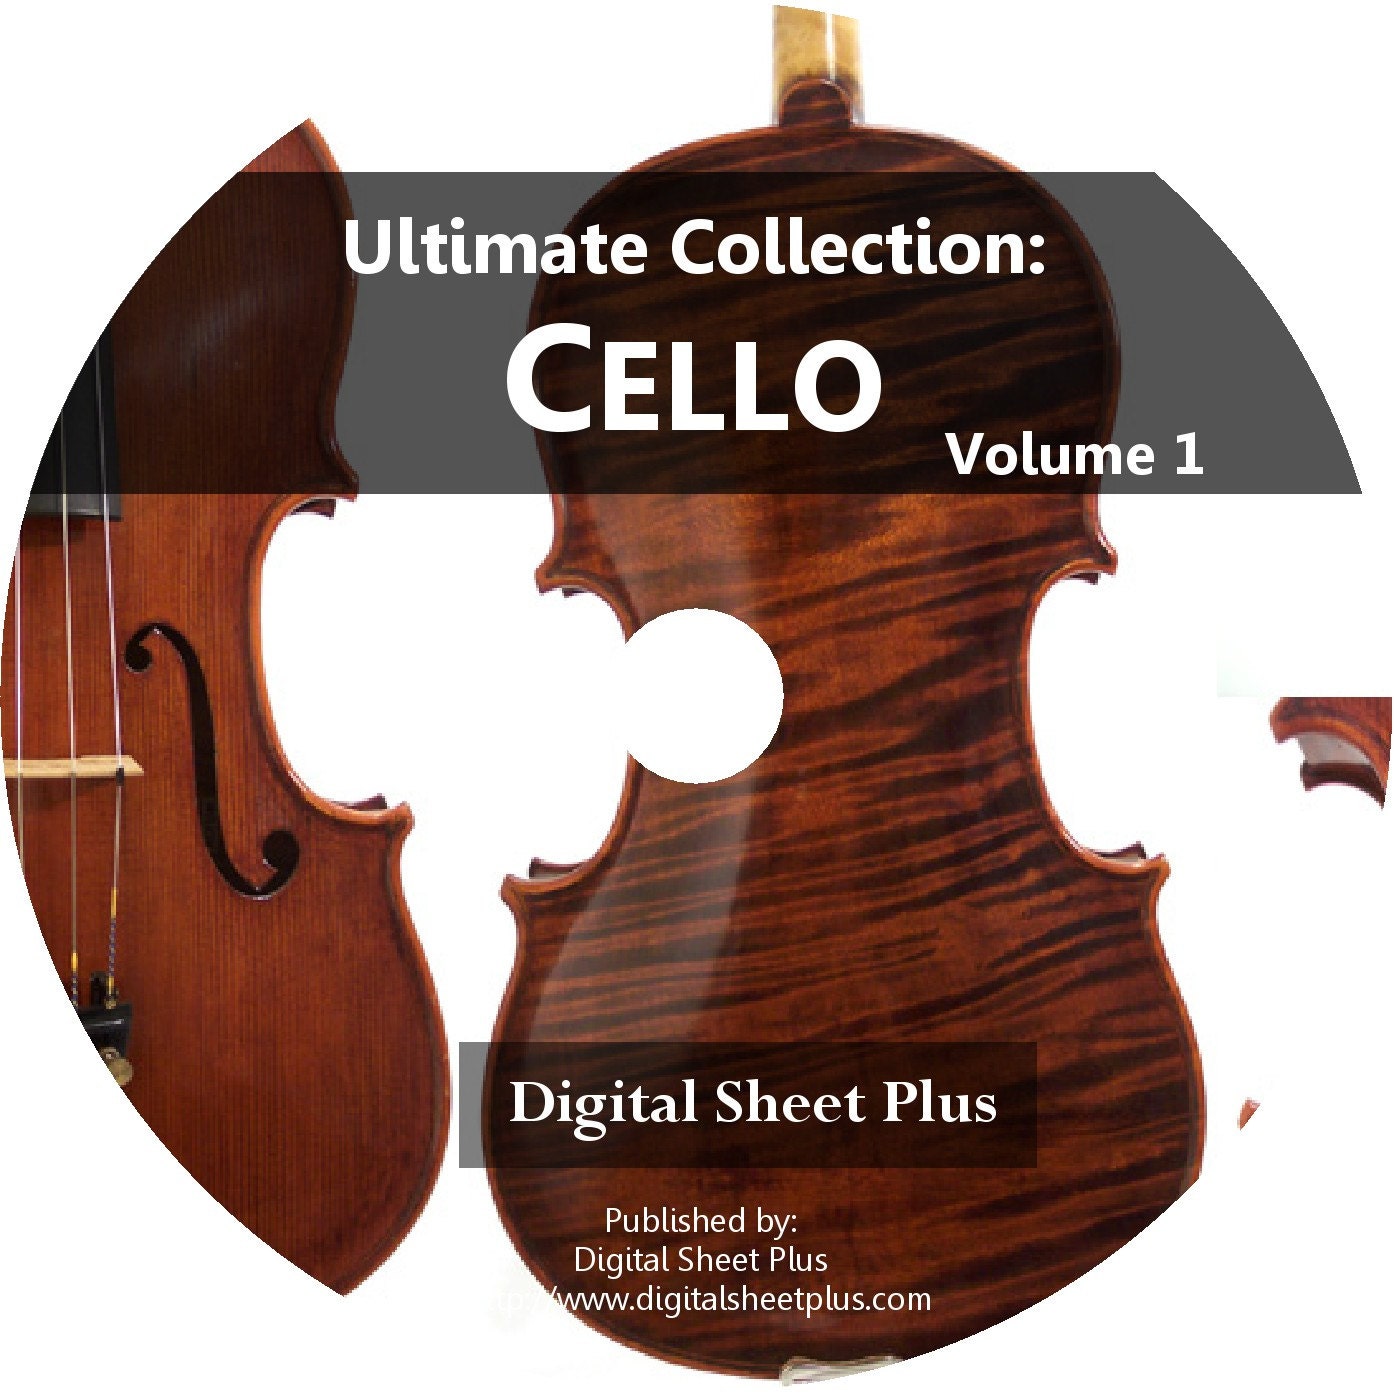 Lalo Cello Concerto Sheet Music